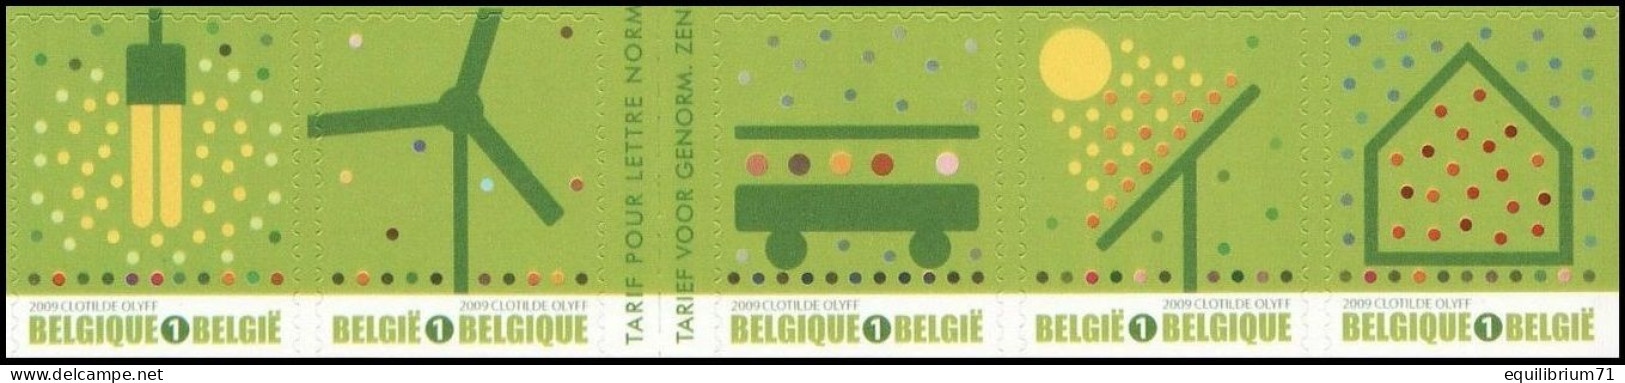 B104/C104**(3911-14 + 3915a) - Timbres Verts/Groene Zegels/Grüne Briefmarken - 1/2 Carnet/1/2 Boekje - BELGIQUE / BELGIË - Unused Stamps